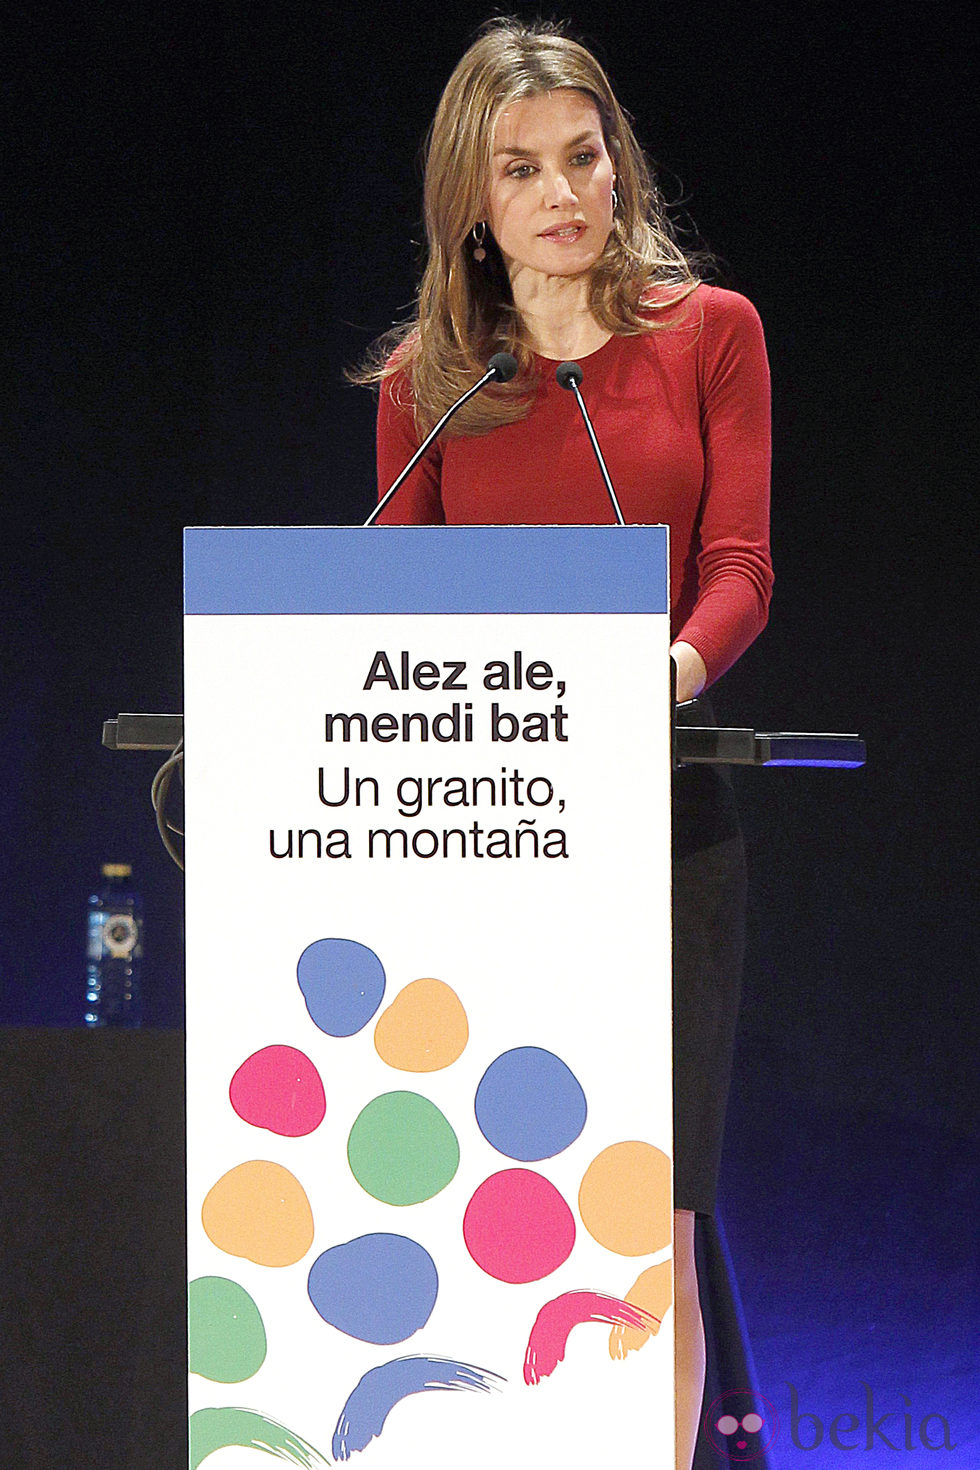 La Princesa Letizia durante su discurso en el Congreso Estatal del Voluntariado